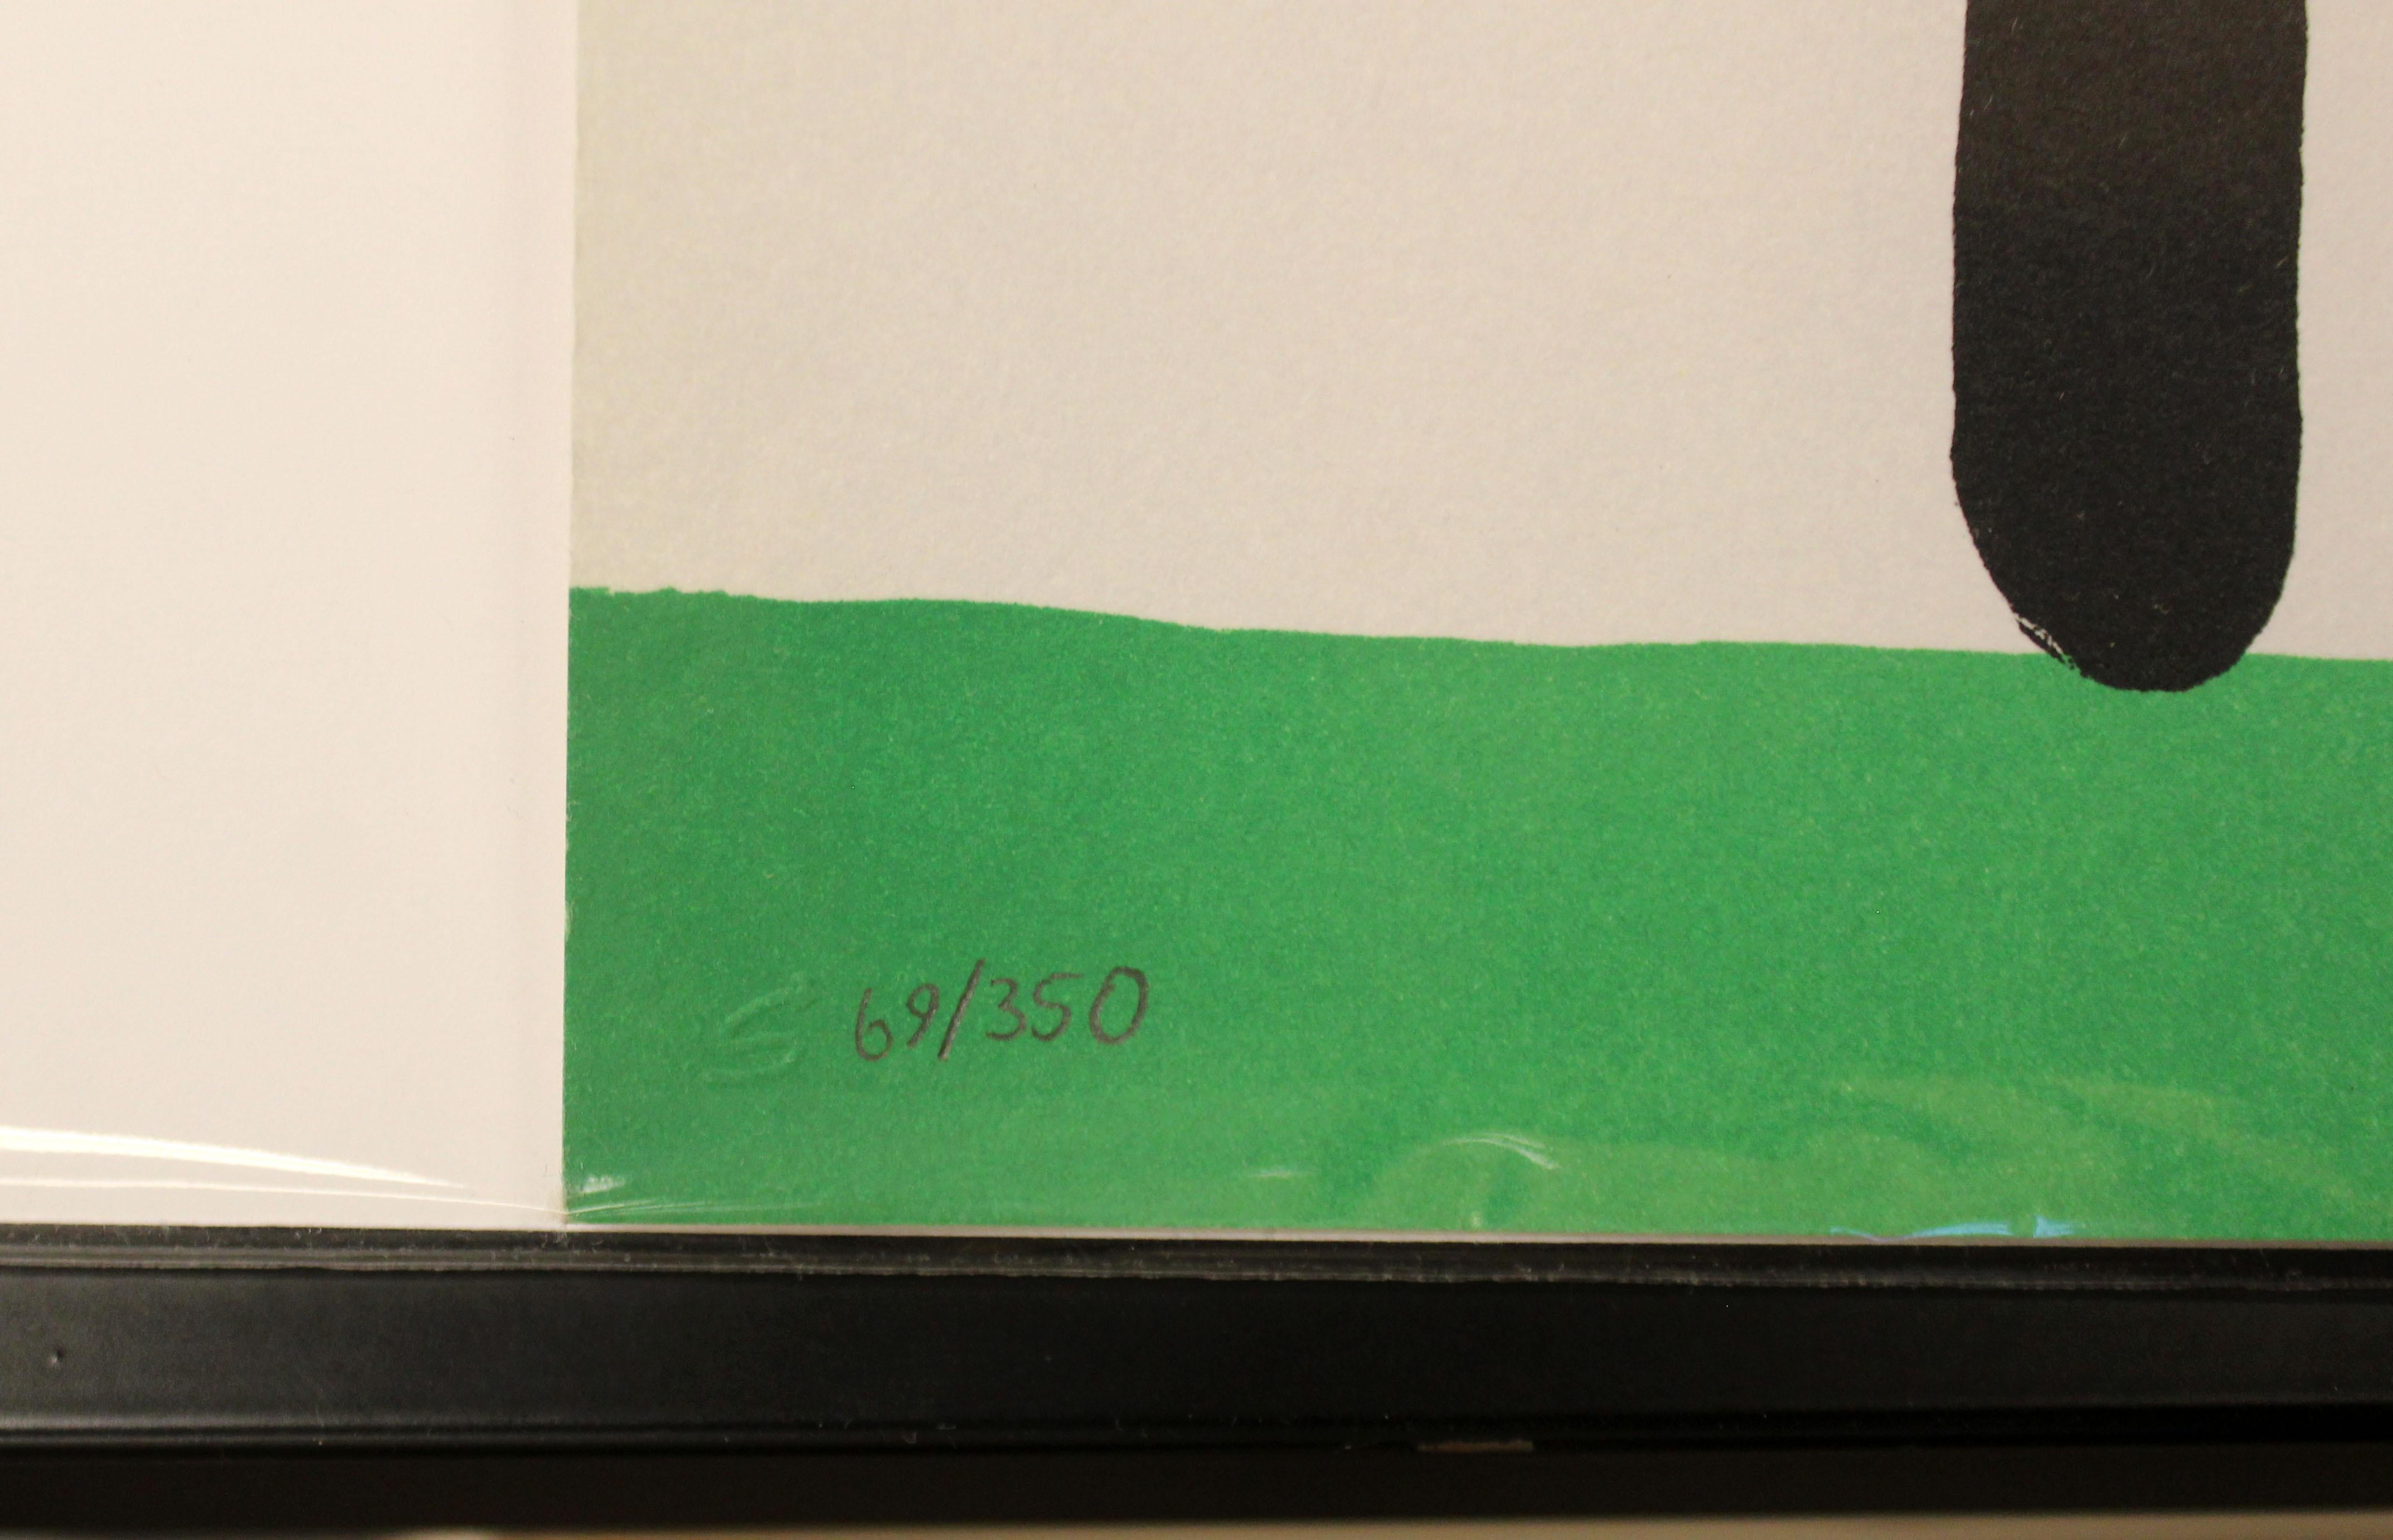 Paper Contemporary Unframed Frank Lloyd Wrong Signed Todd Goldman Silkscreen 69/350